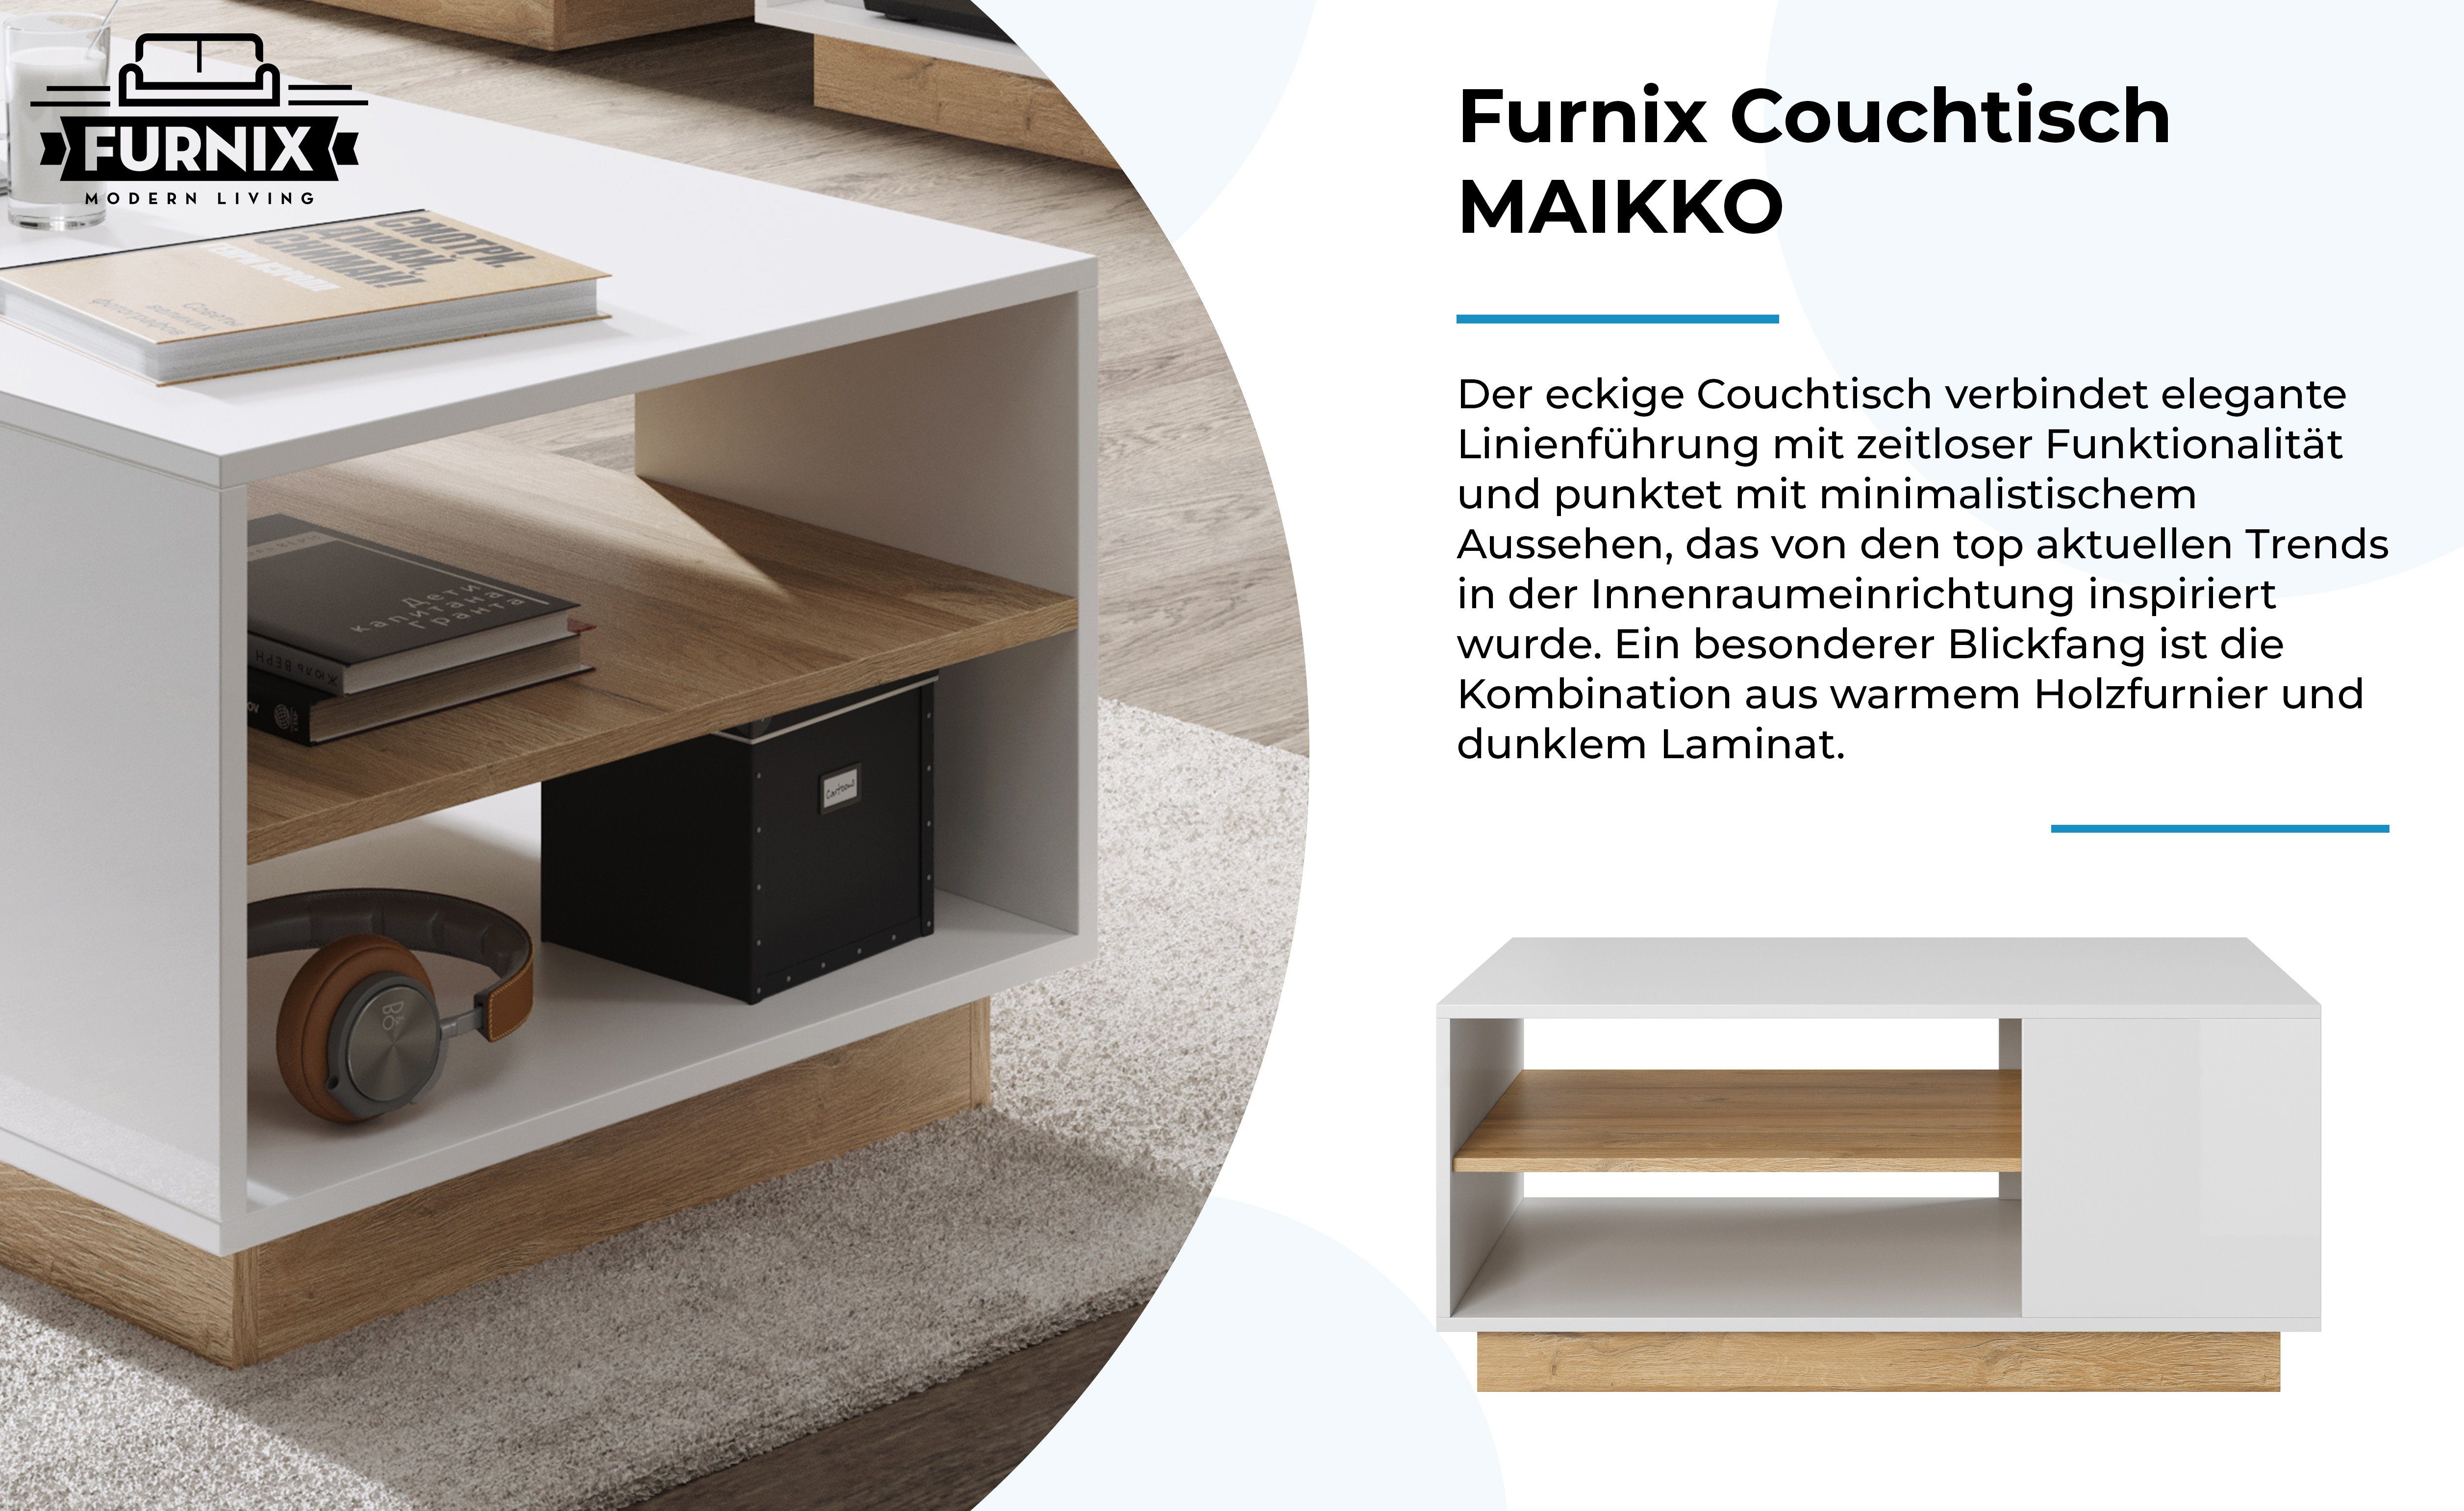 Holztisch x T60 in made EU Weiß/ Furnix B100 dekorativ, Couchtisch cm, eckiger 2 Ablagefächern Grandson, H45 Eiche MAIKKO x